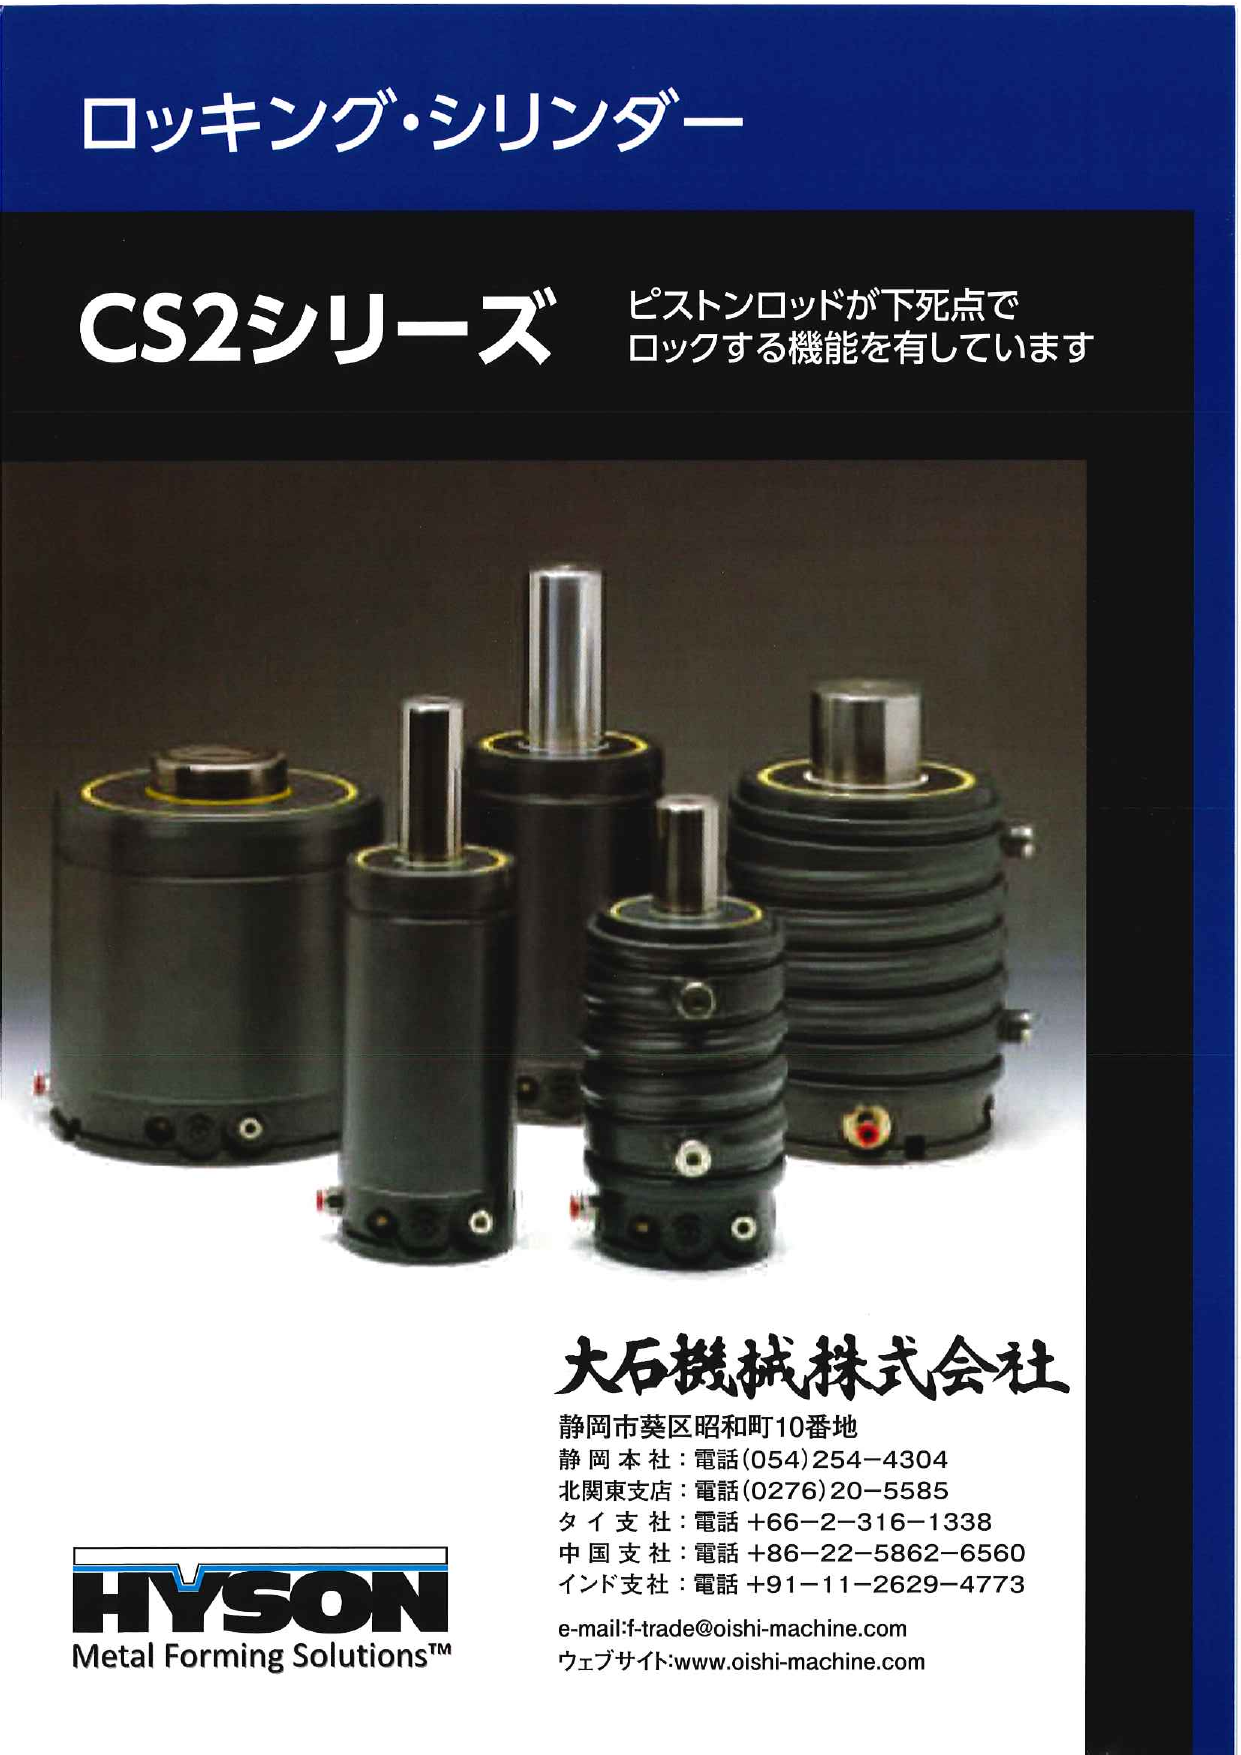 ロッキング・シリンダー CS2シリーズ（大石機械株式会社）のカタログ